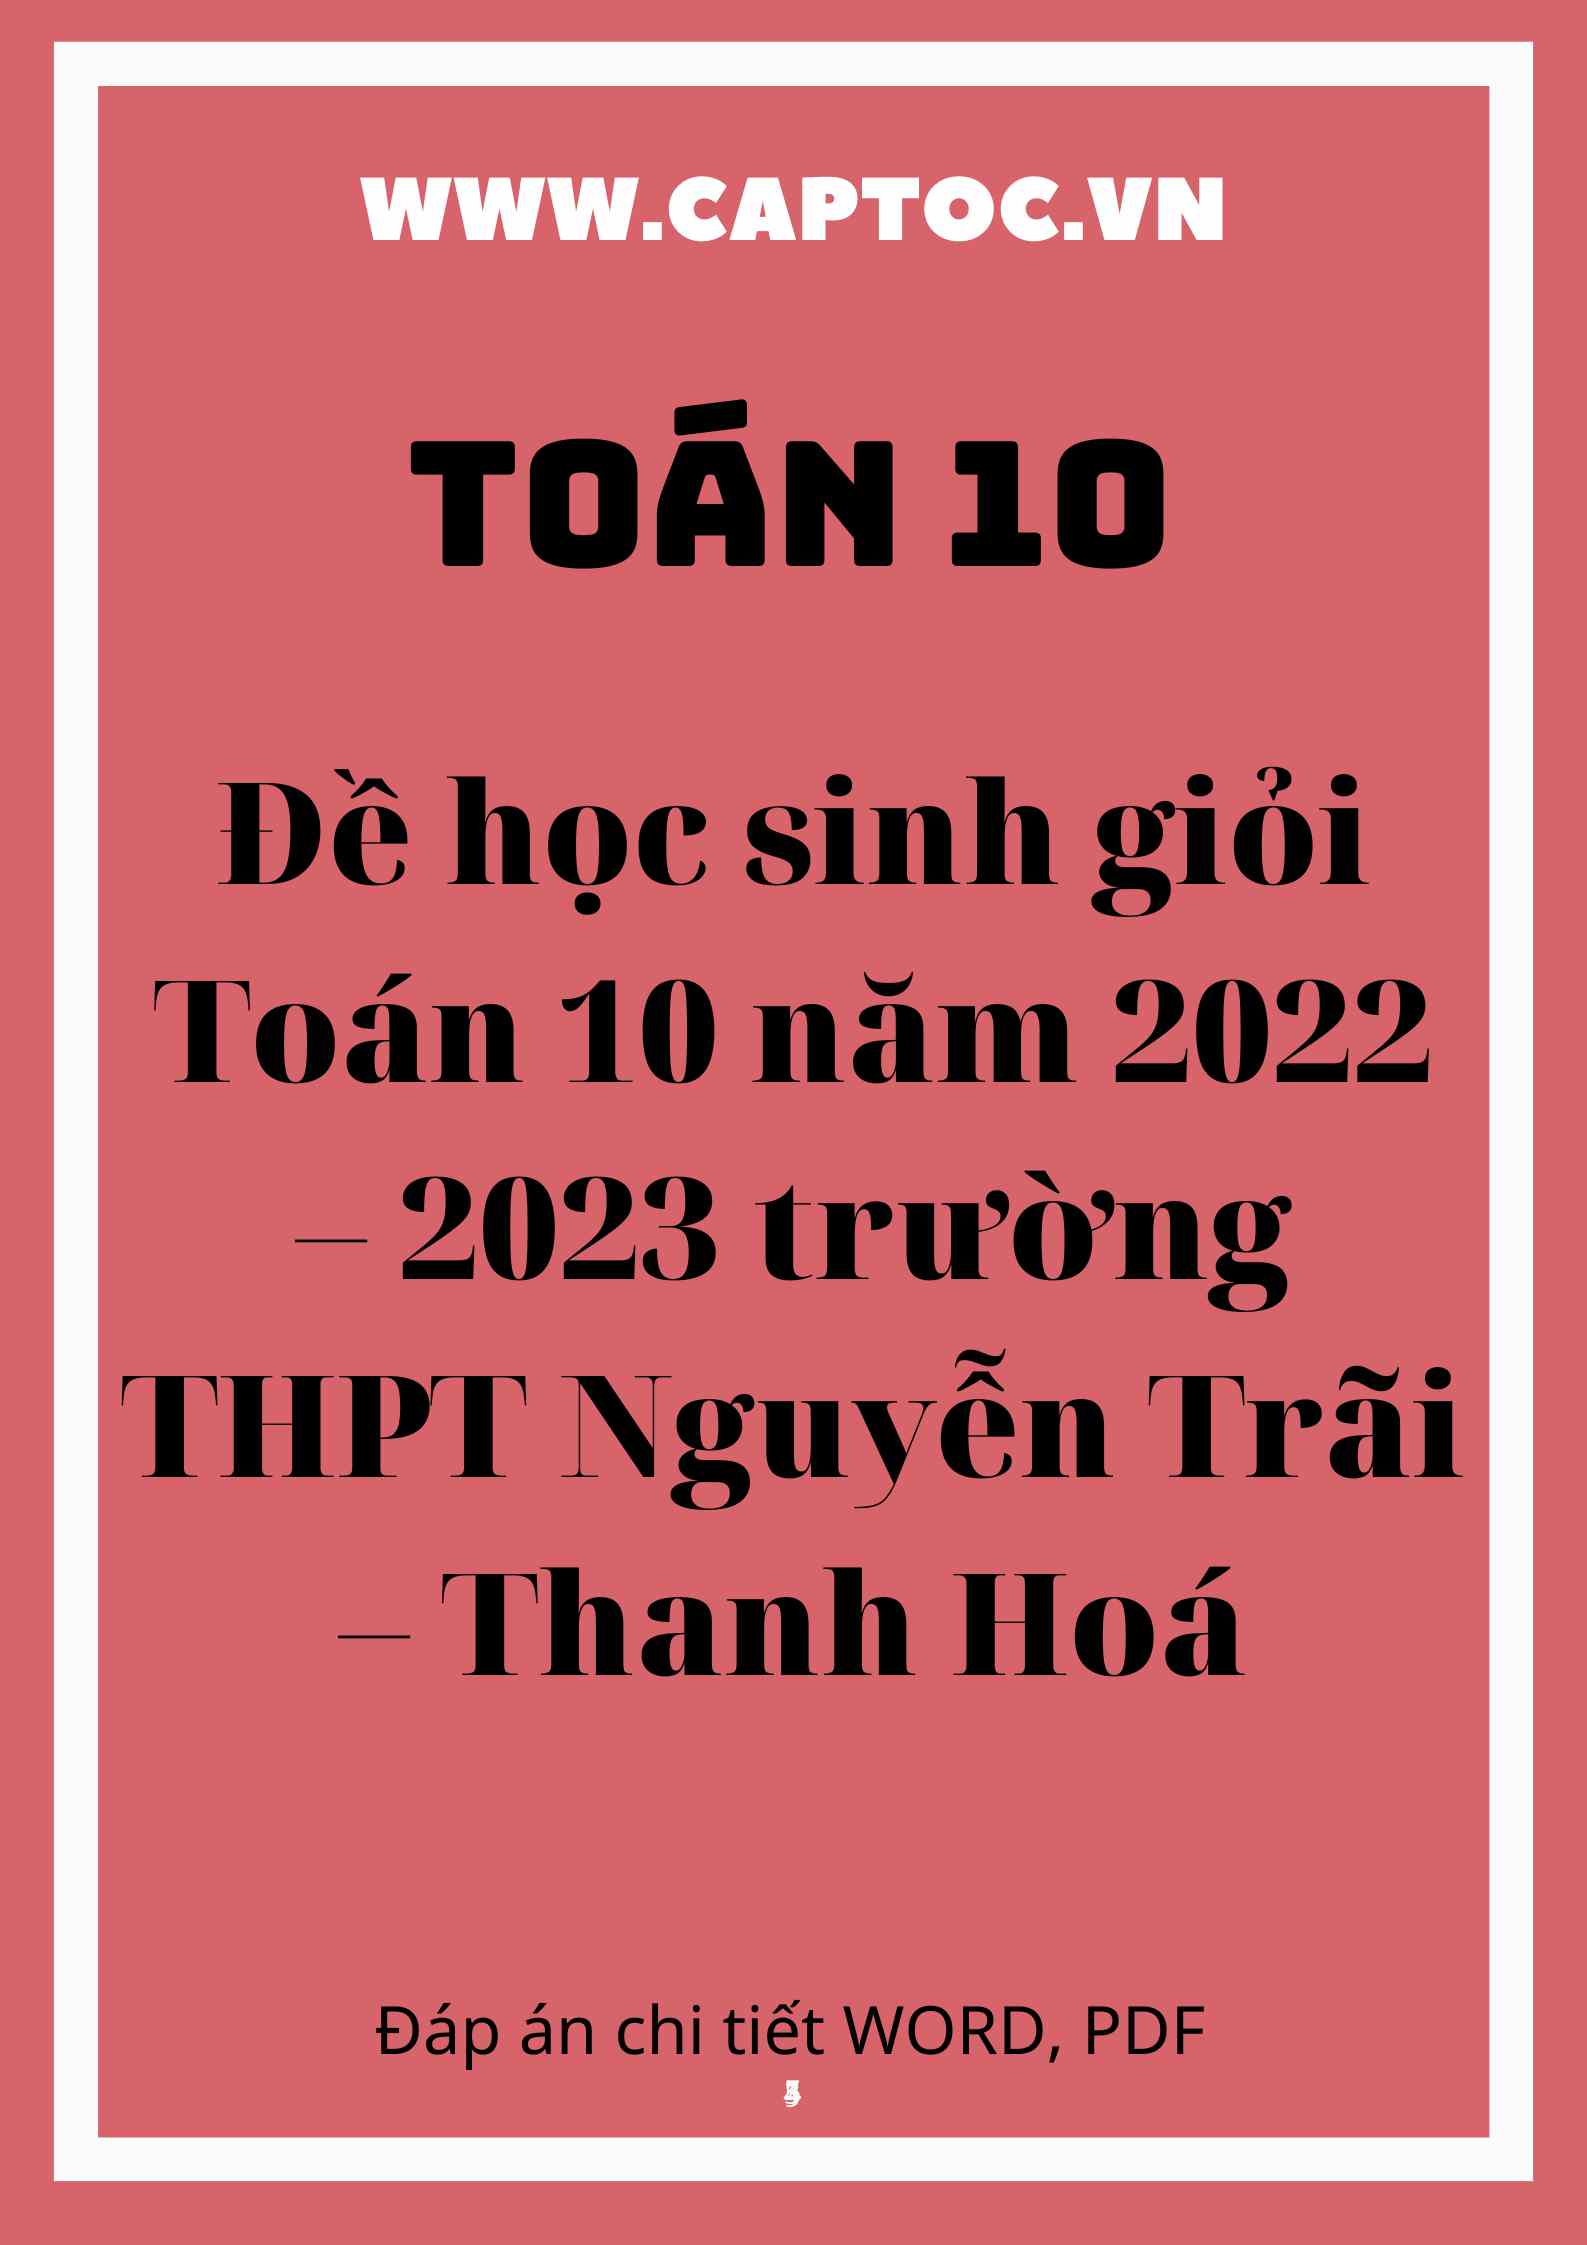 Đề học sinh giỏi Toán 10 năm 2022 – 2023 trường THPT Nguyễn Trãi – Thanh Hoá